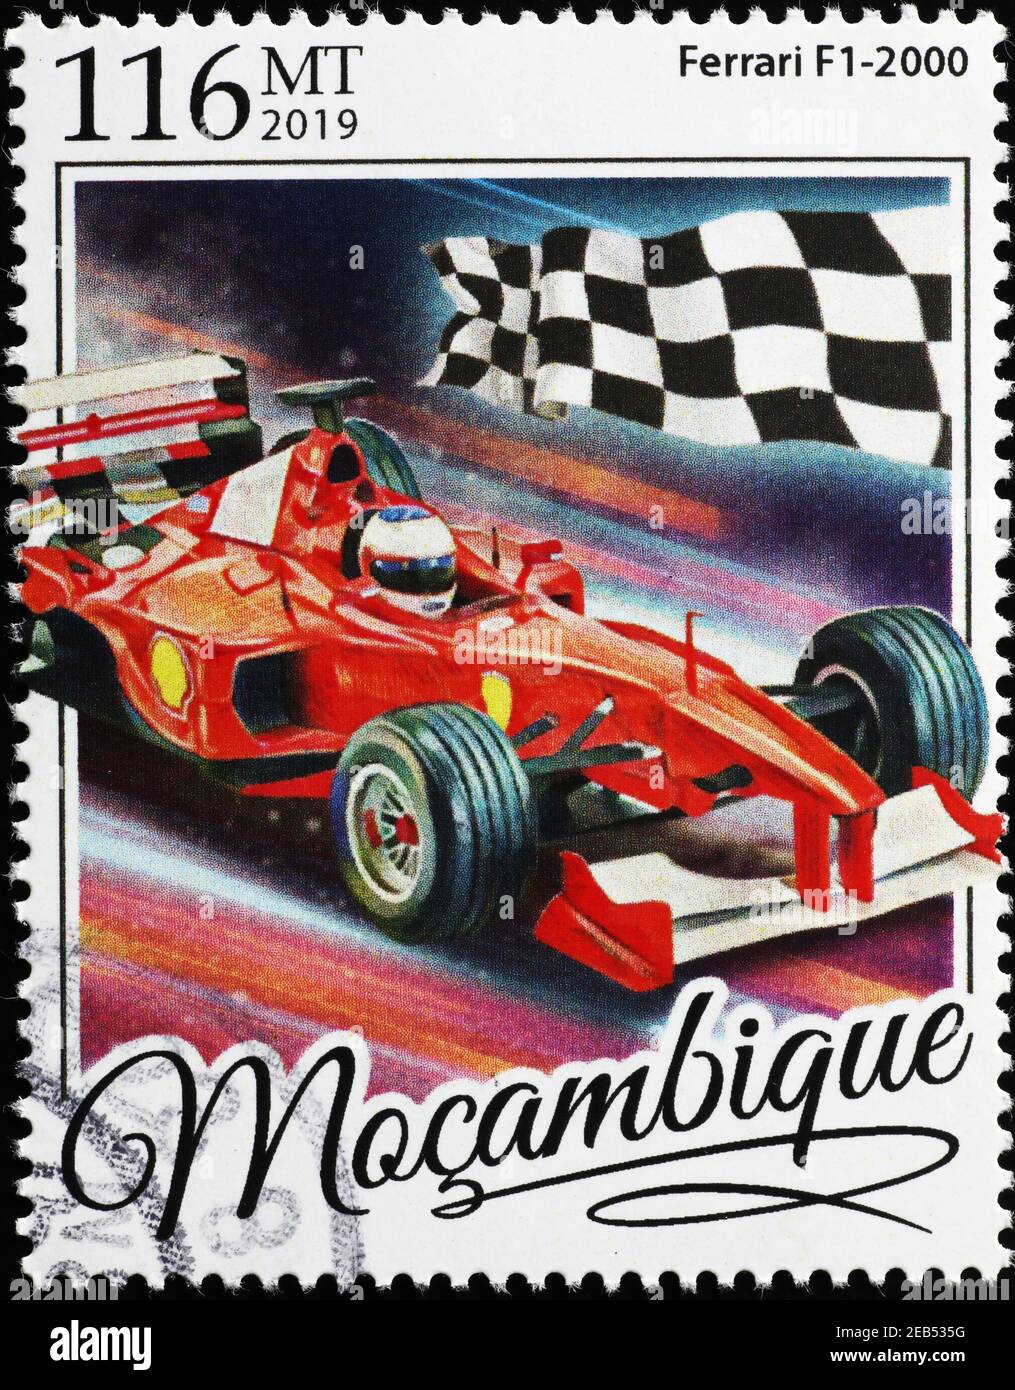 Ferrari F1-2000 vittoriosa al traguardo sul francobollo Foto stock - Alamy